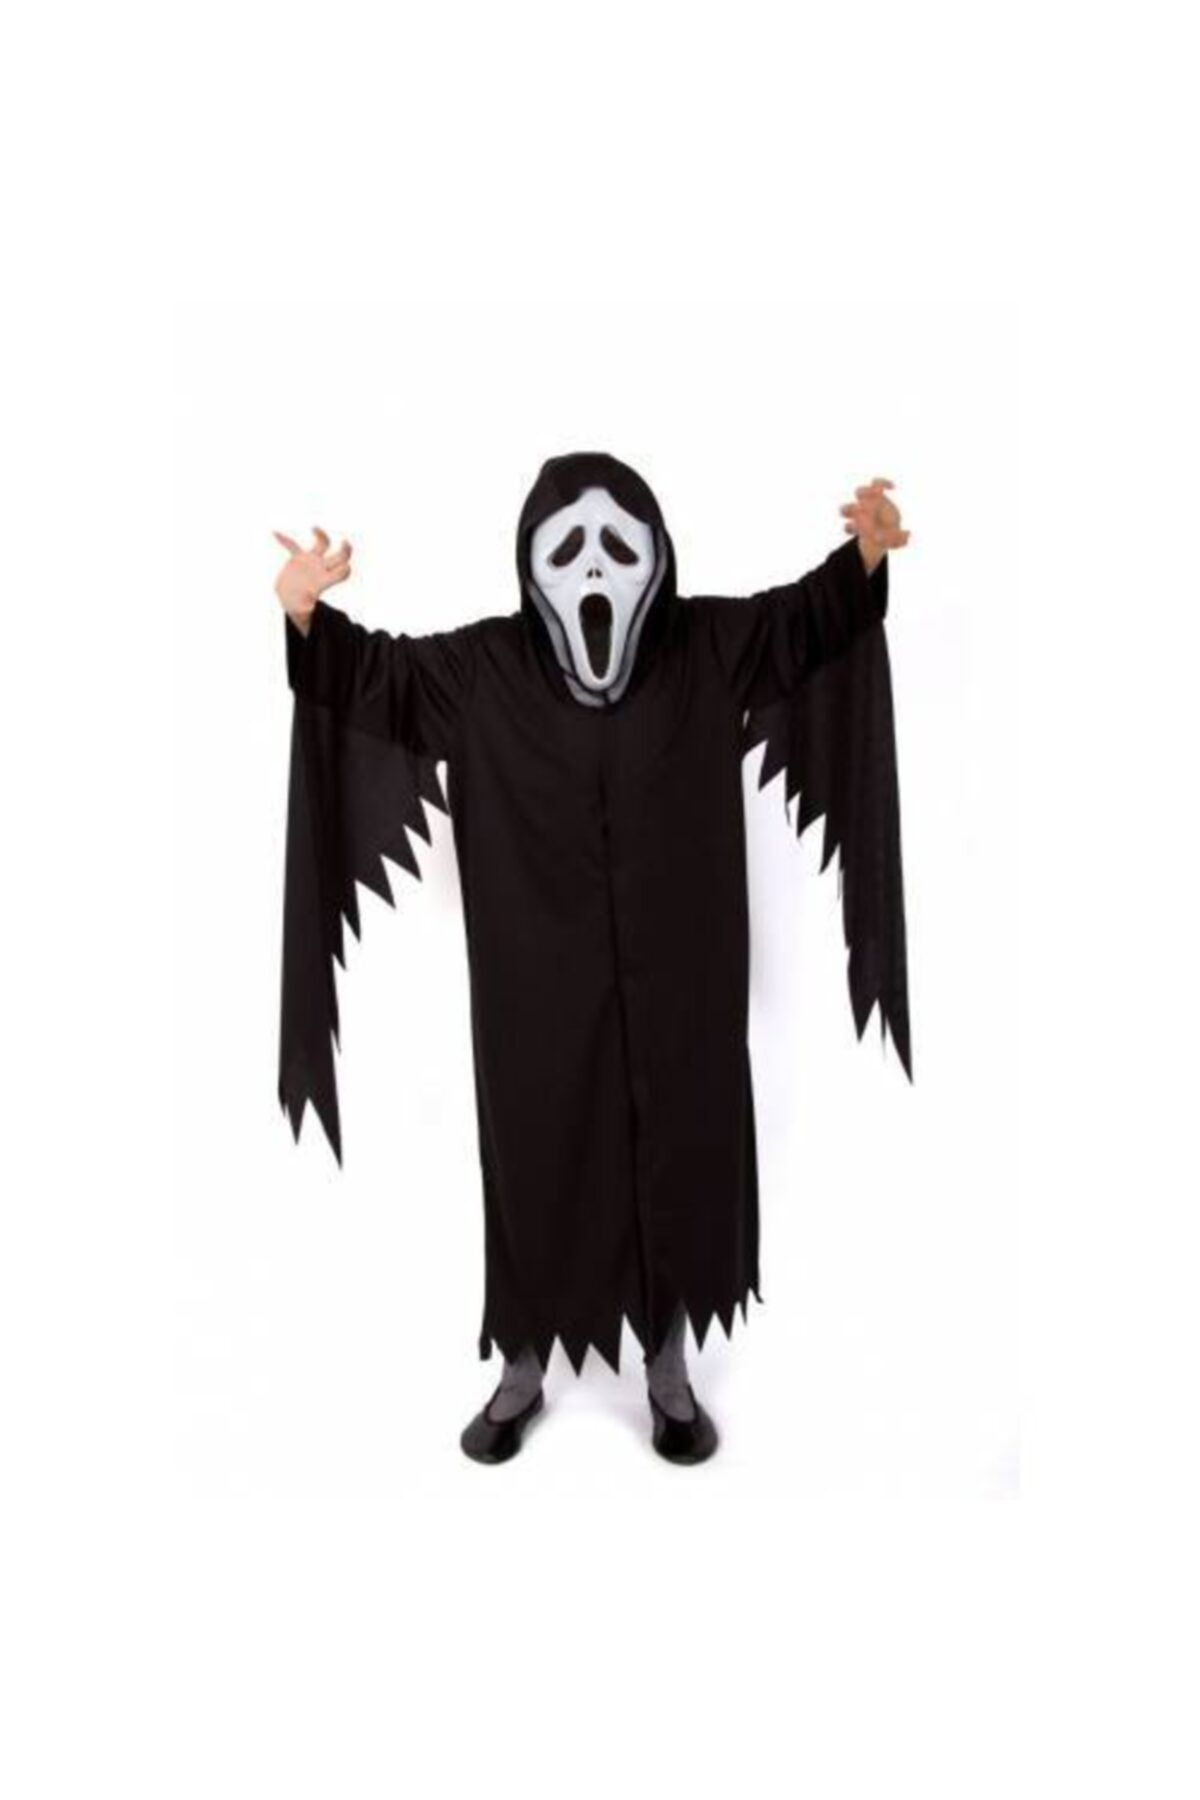 Mashotrend Yetişkin Kostümü - Yetişkin Çığlık Kostümü + Çığlık Maskesi - Cadılar Bayramı Kostümü